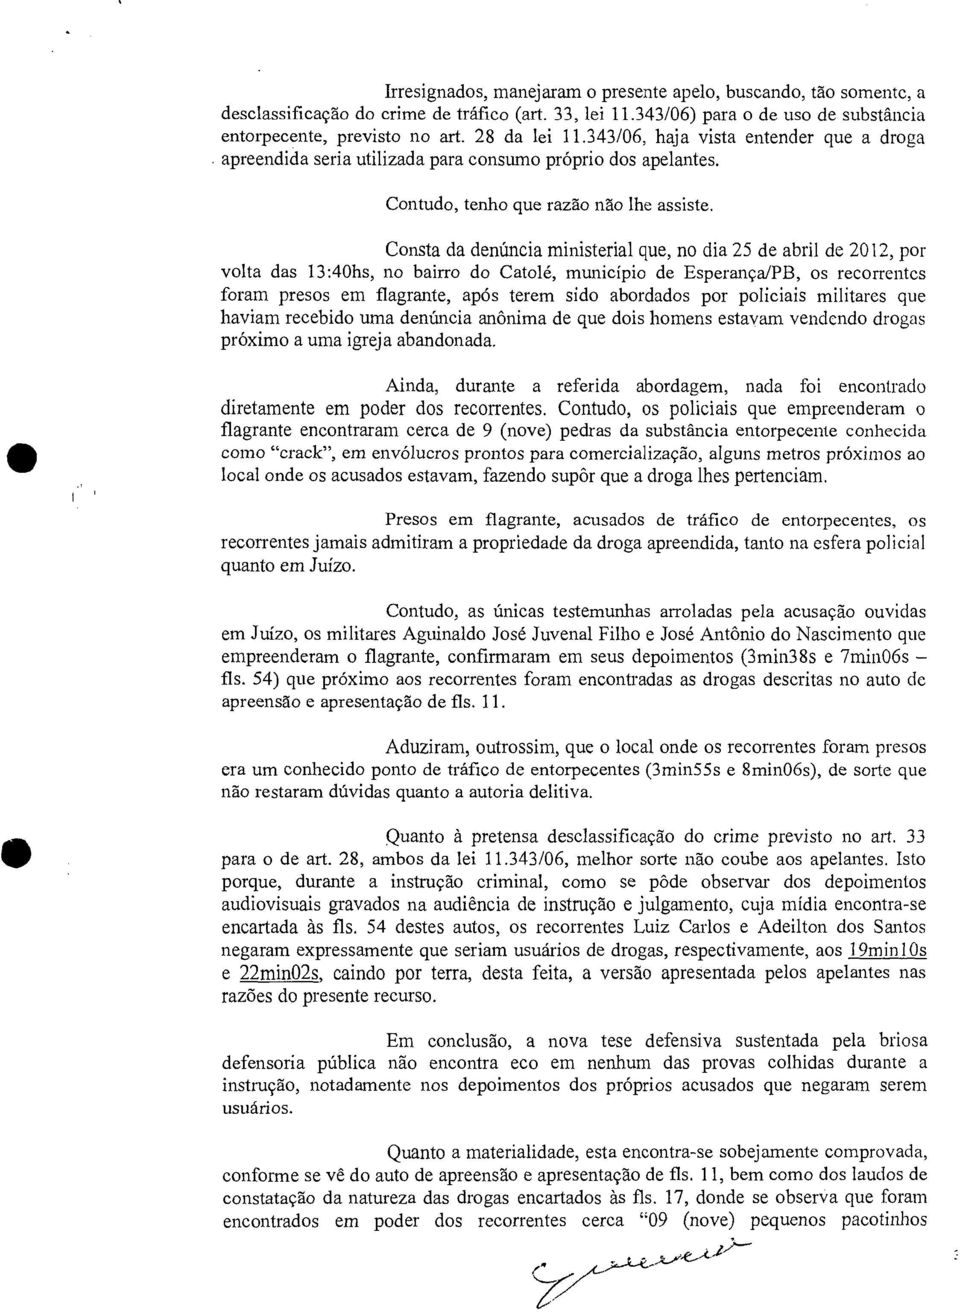 Consta da denúncia ministerial que, no dia 25 de abril de 2012, por volta das 13:40hs, no bairro do Catolé, município de Esperança/PB, os recorrentes foram presos em flagrante, após terem sido